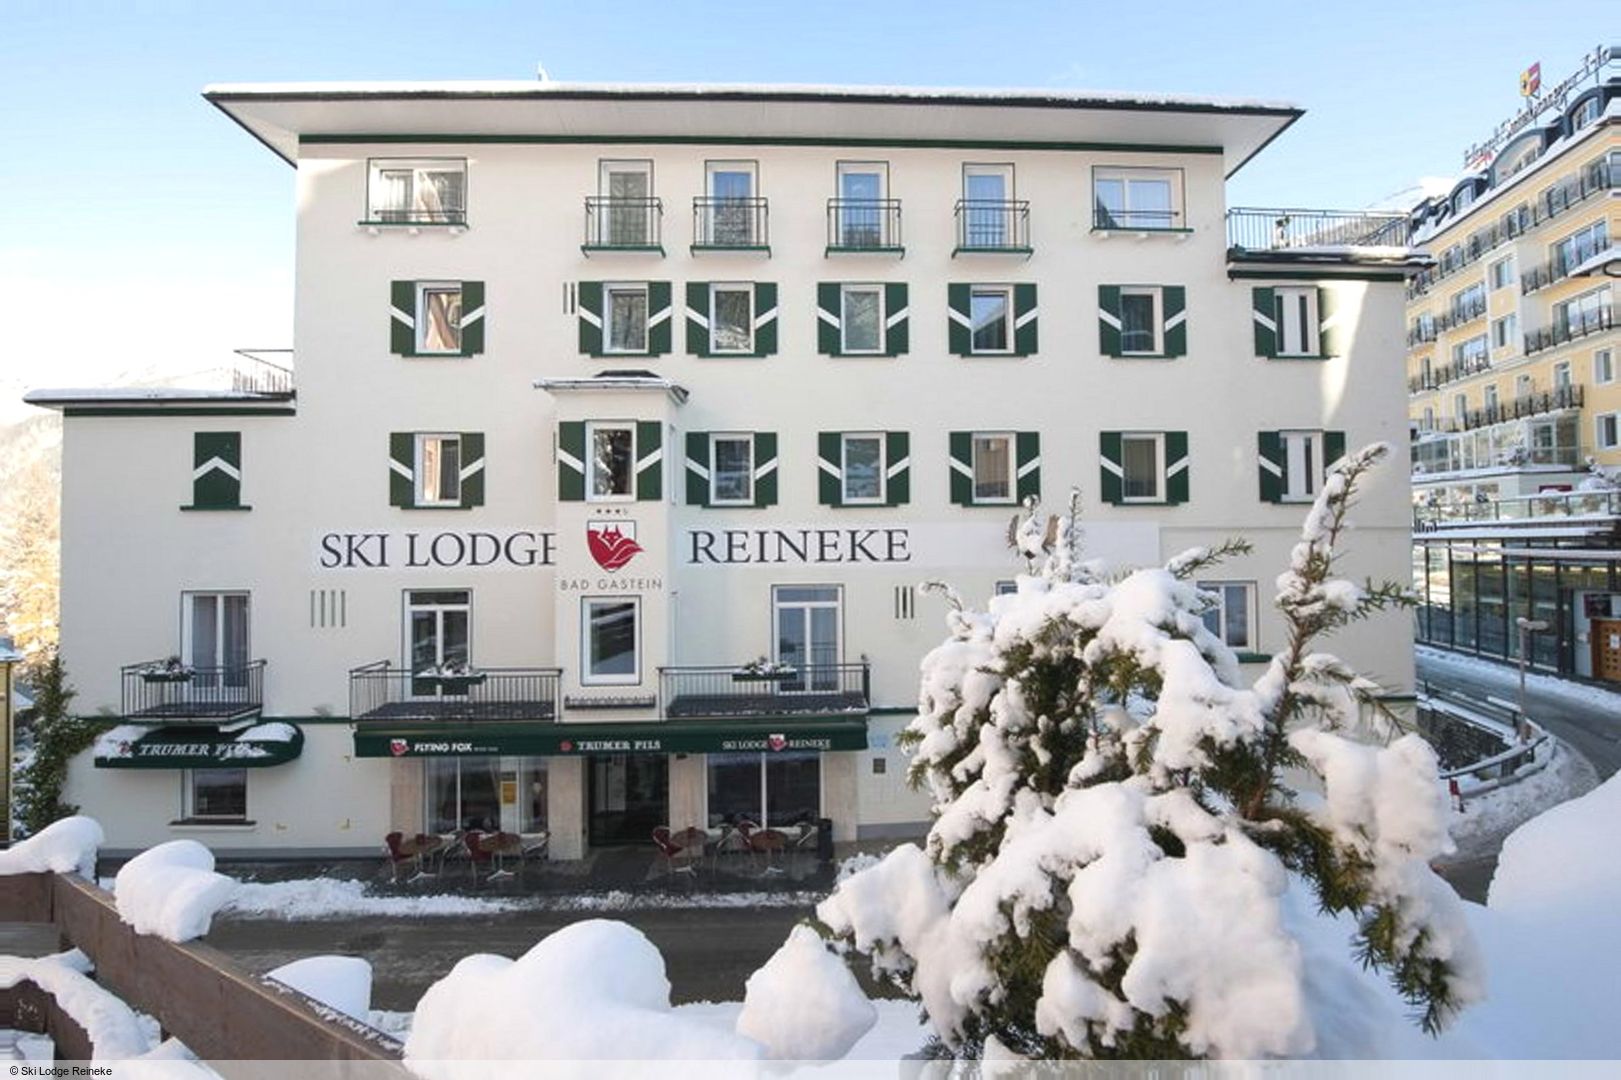 Slide1 - Ski Lodge Reineke